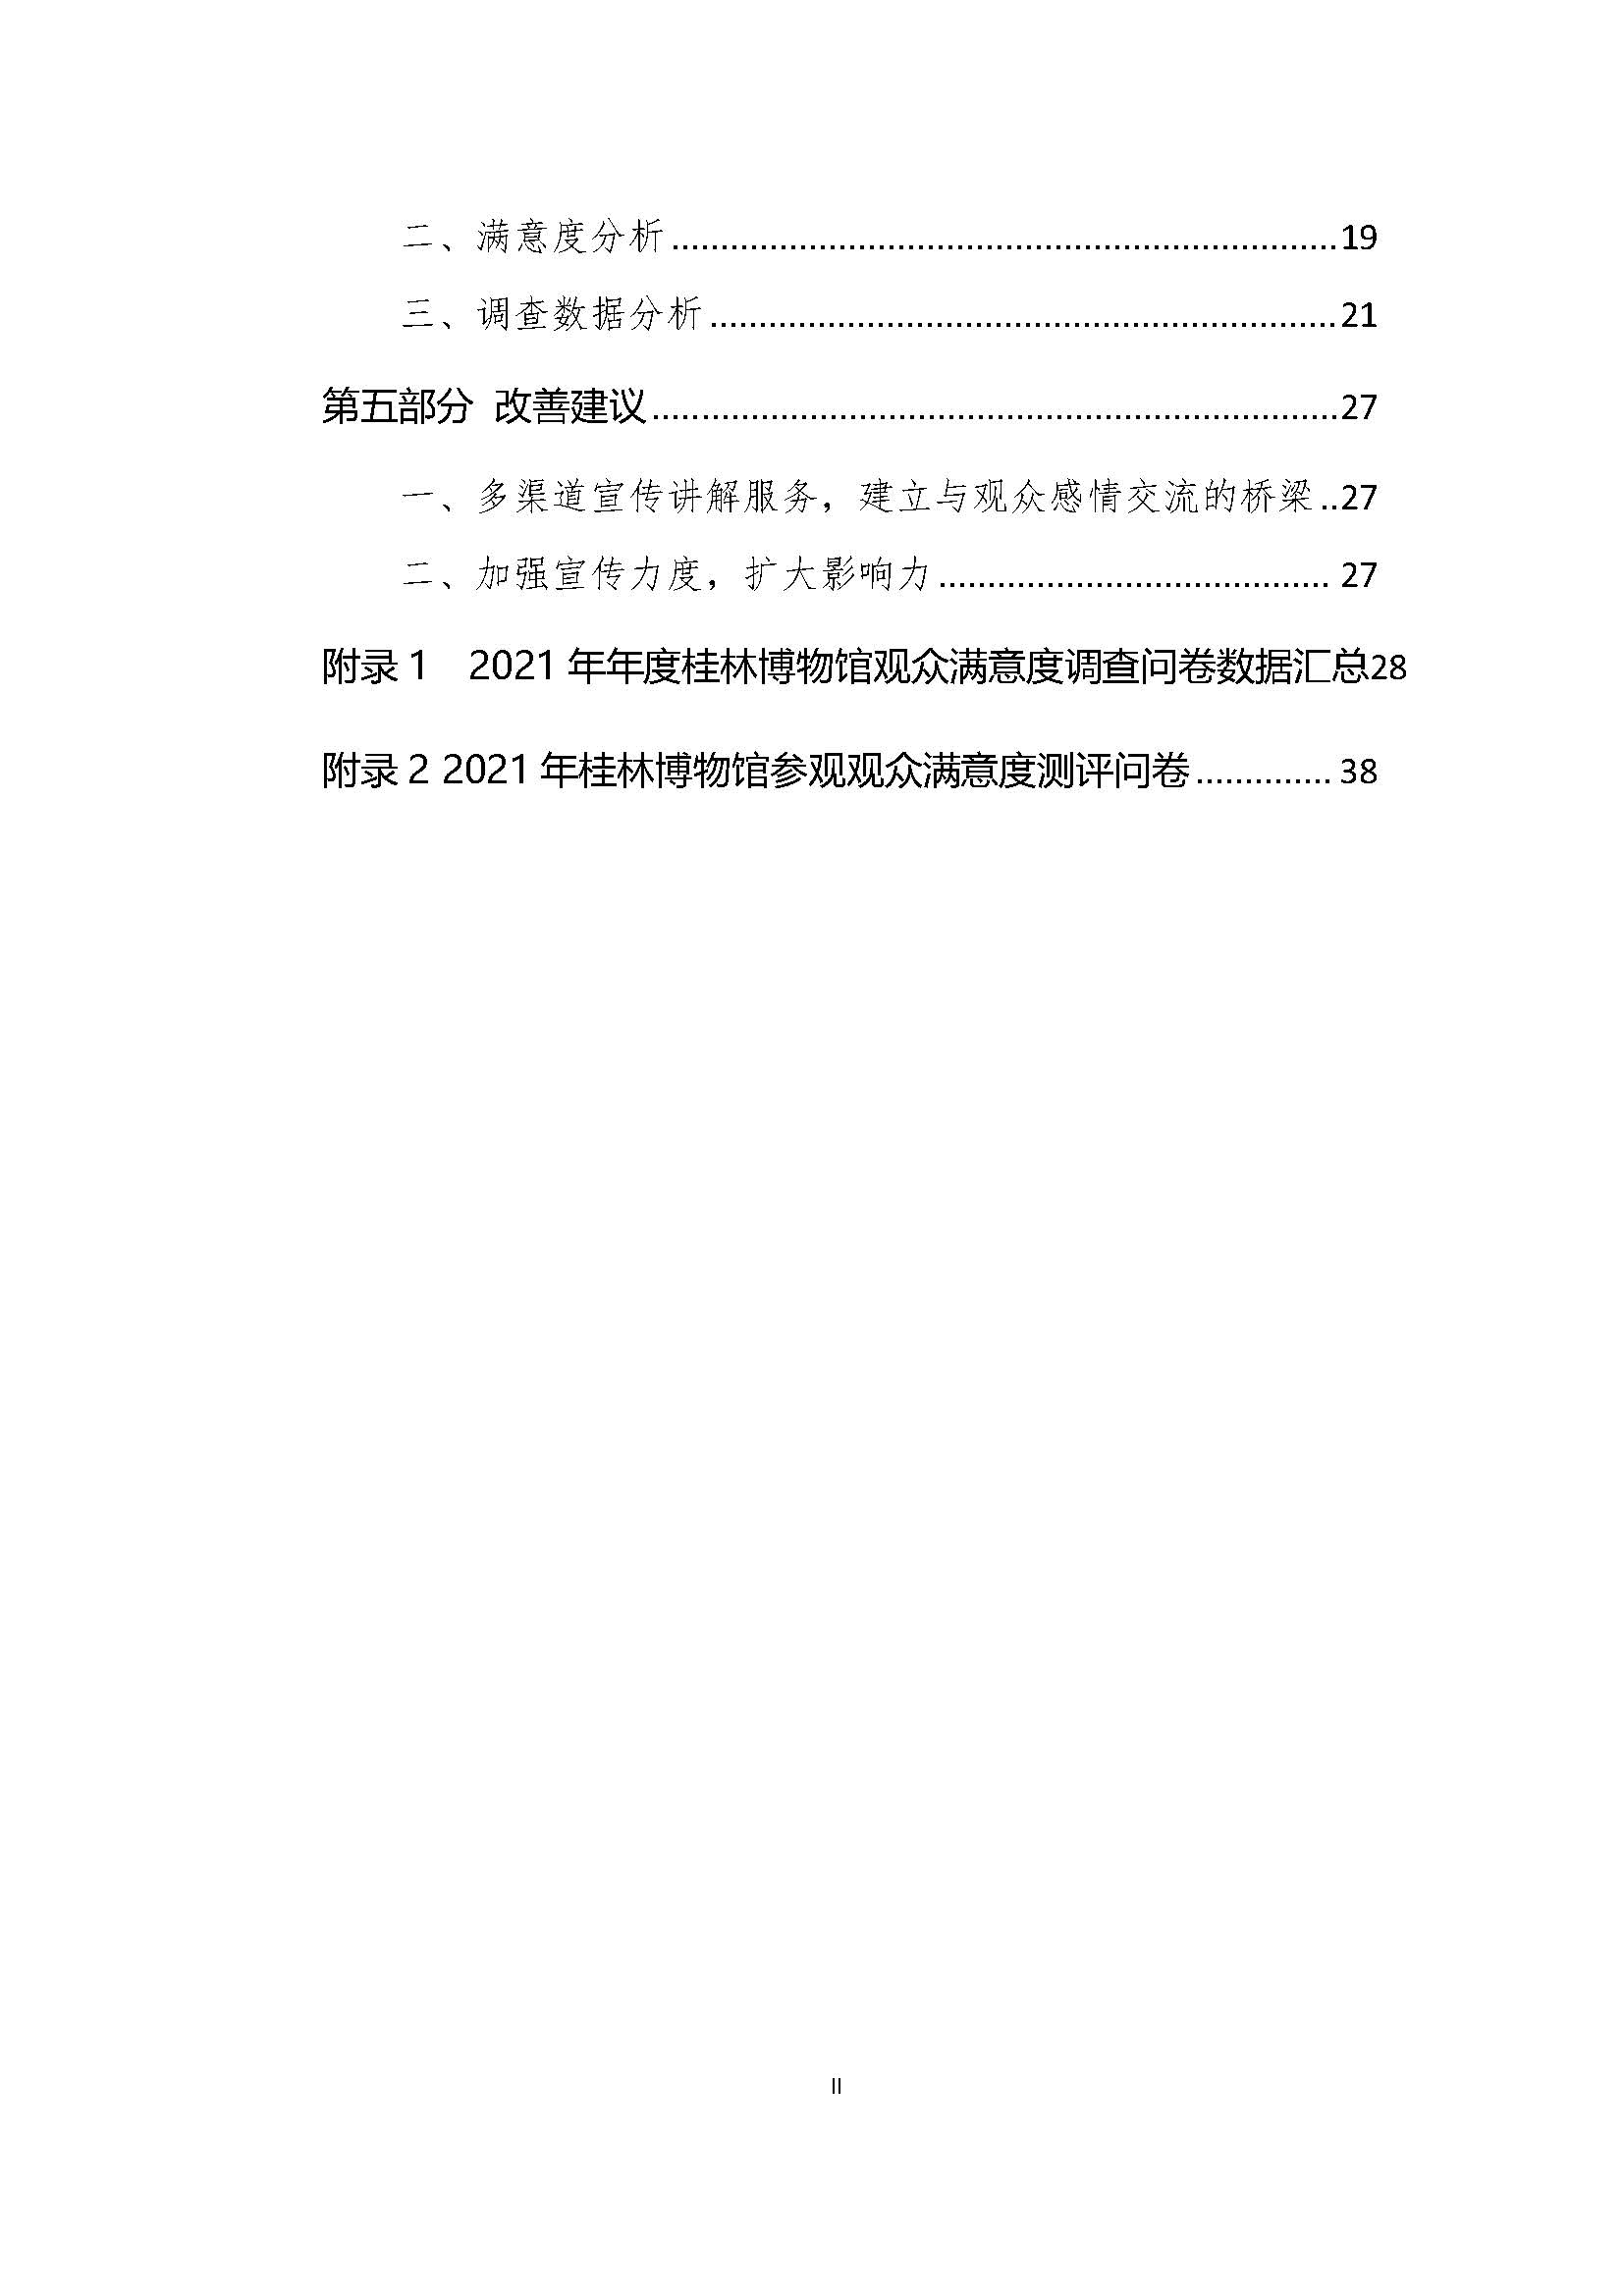 2021年桂林博物馆参观观众满意度调查报告_v3_页面_03.jpg